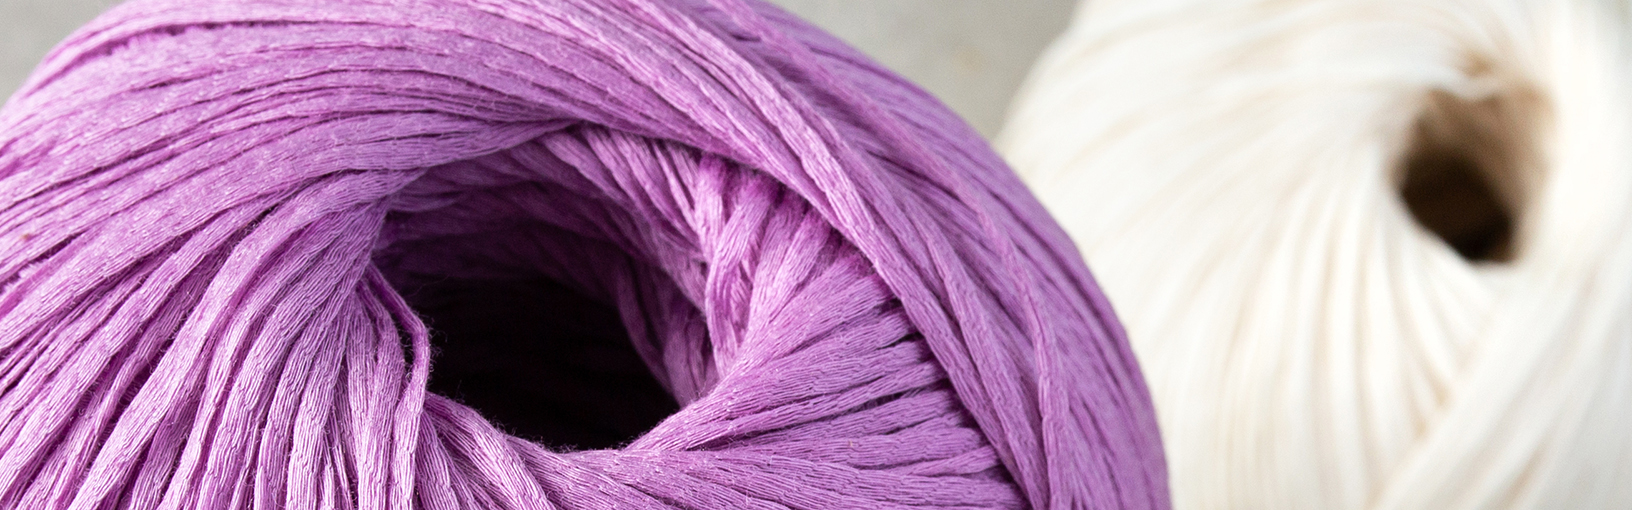 Garn af høj kvalitet til strikning, hækling og filtning LANA GROSSA<br> uld & garn | Hæklegarn